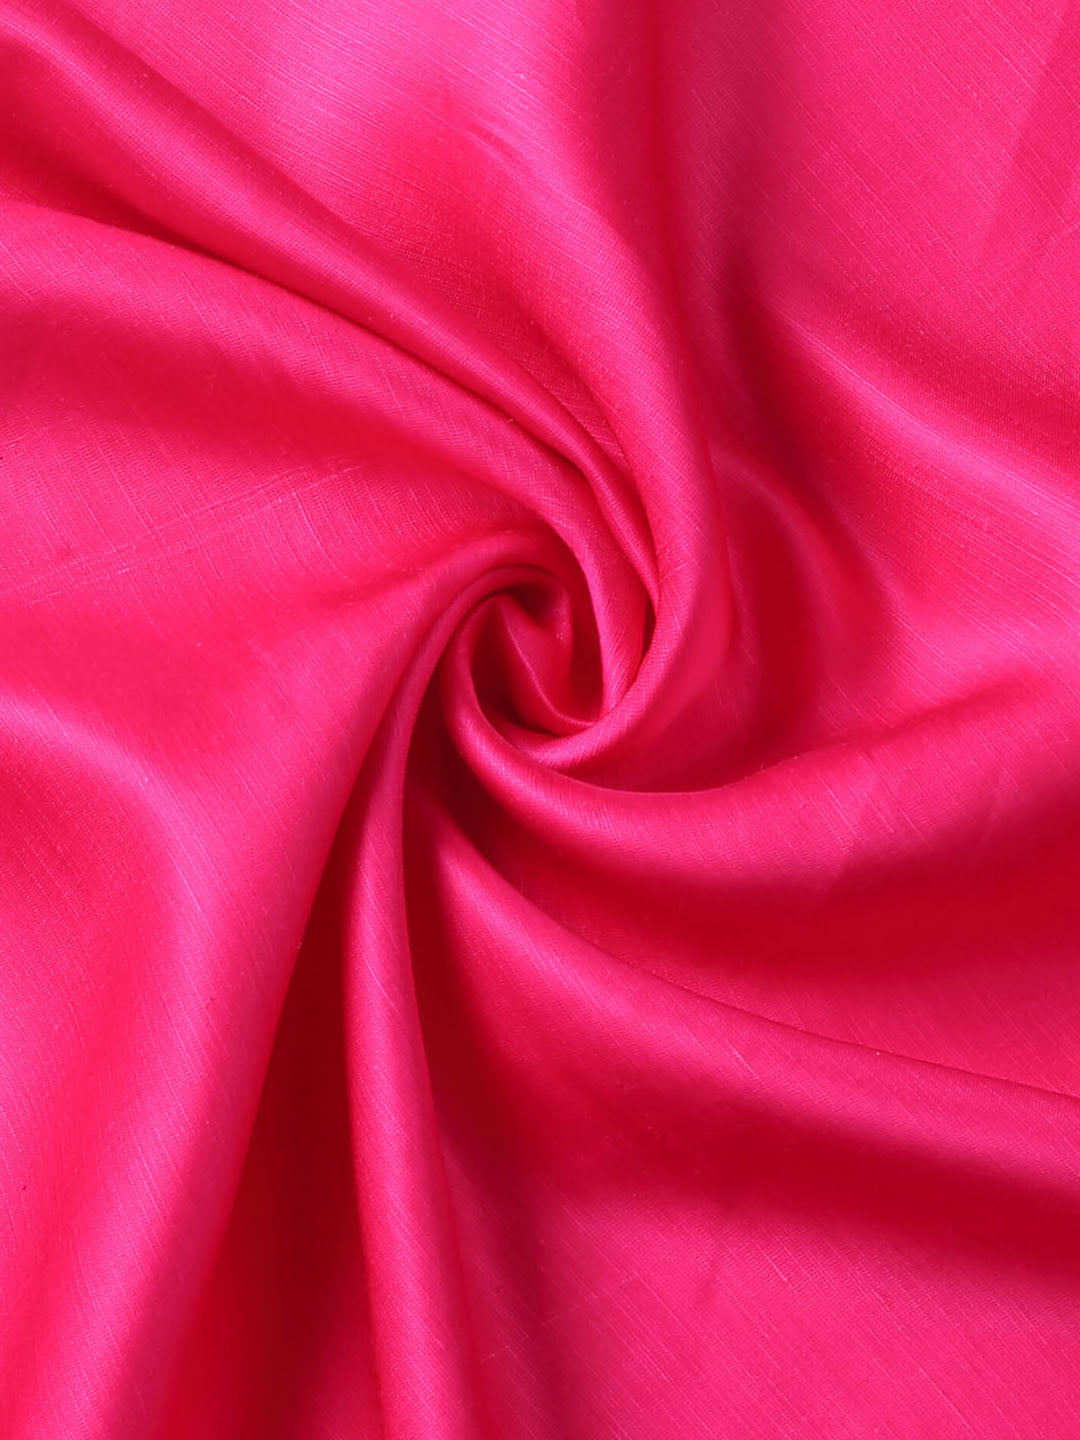 Fuchsia Pink Linen Satin Fabric